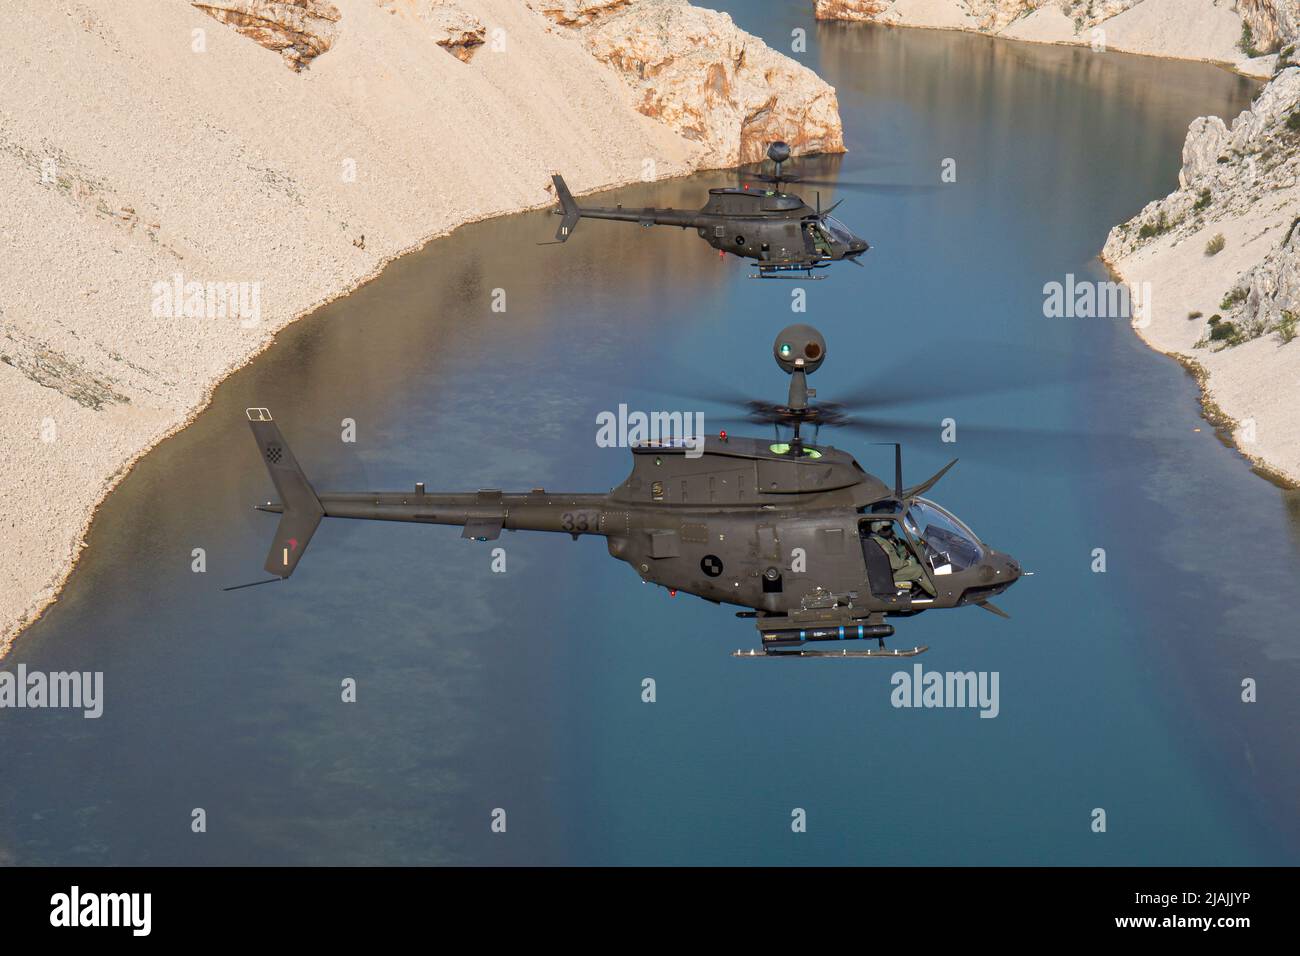 Une paire d'hélicoptères d'attaque Kiowa Warrior de la Force aérienne croate OH-58 capturés en vol, en Croatie. Banque D'Images